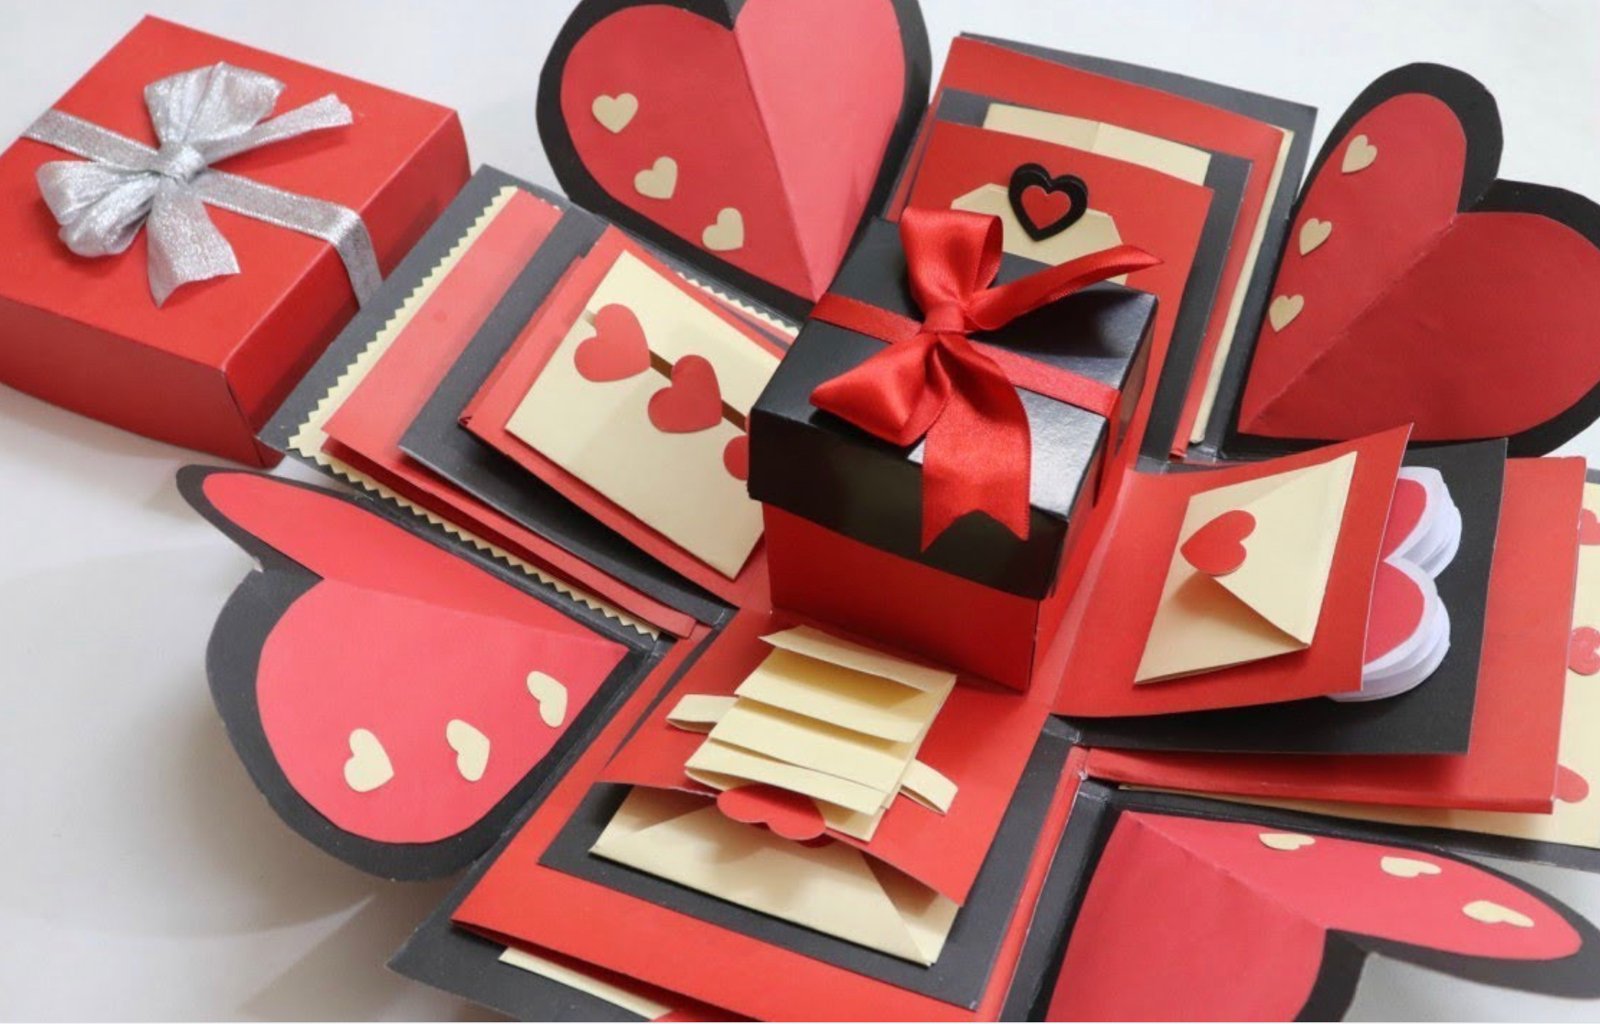 En este momento estás viendo ¡Sorprende a tu pareja con los regalos más originales para San Valentín! Descubre nuestras ideas únicas y conquista su corazón